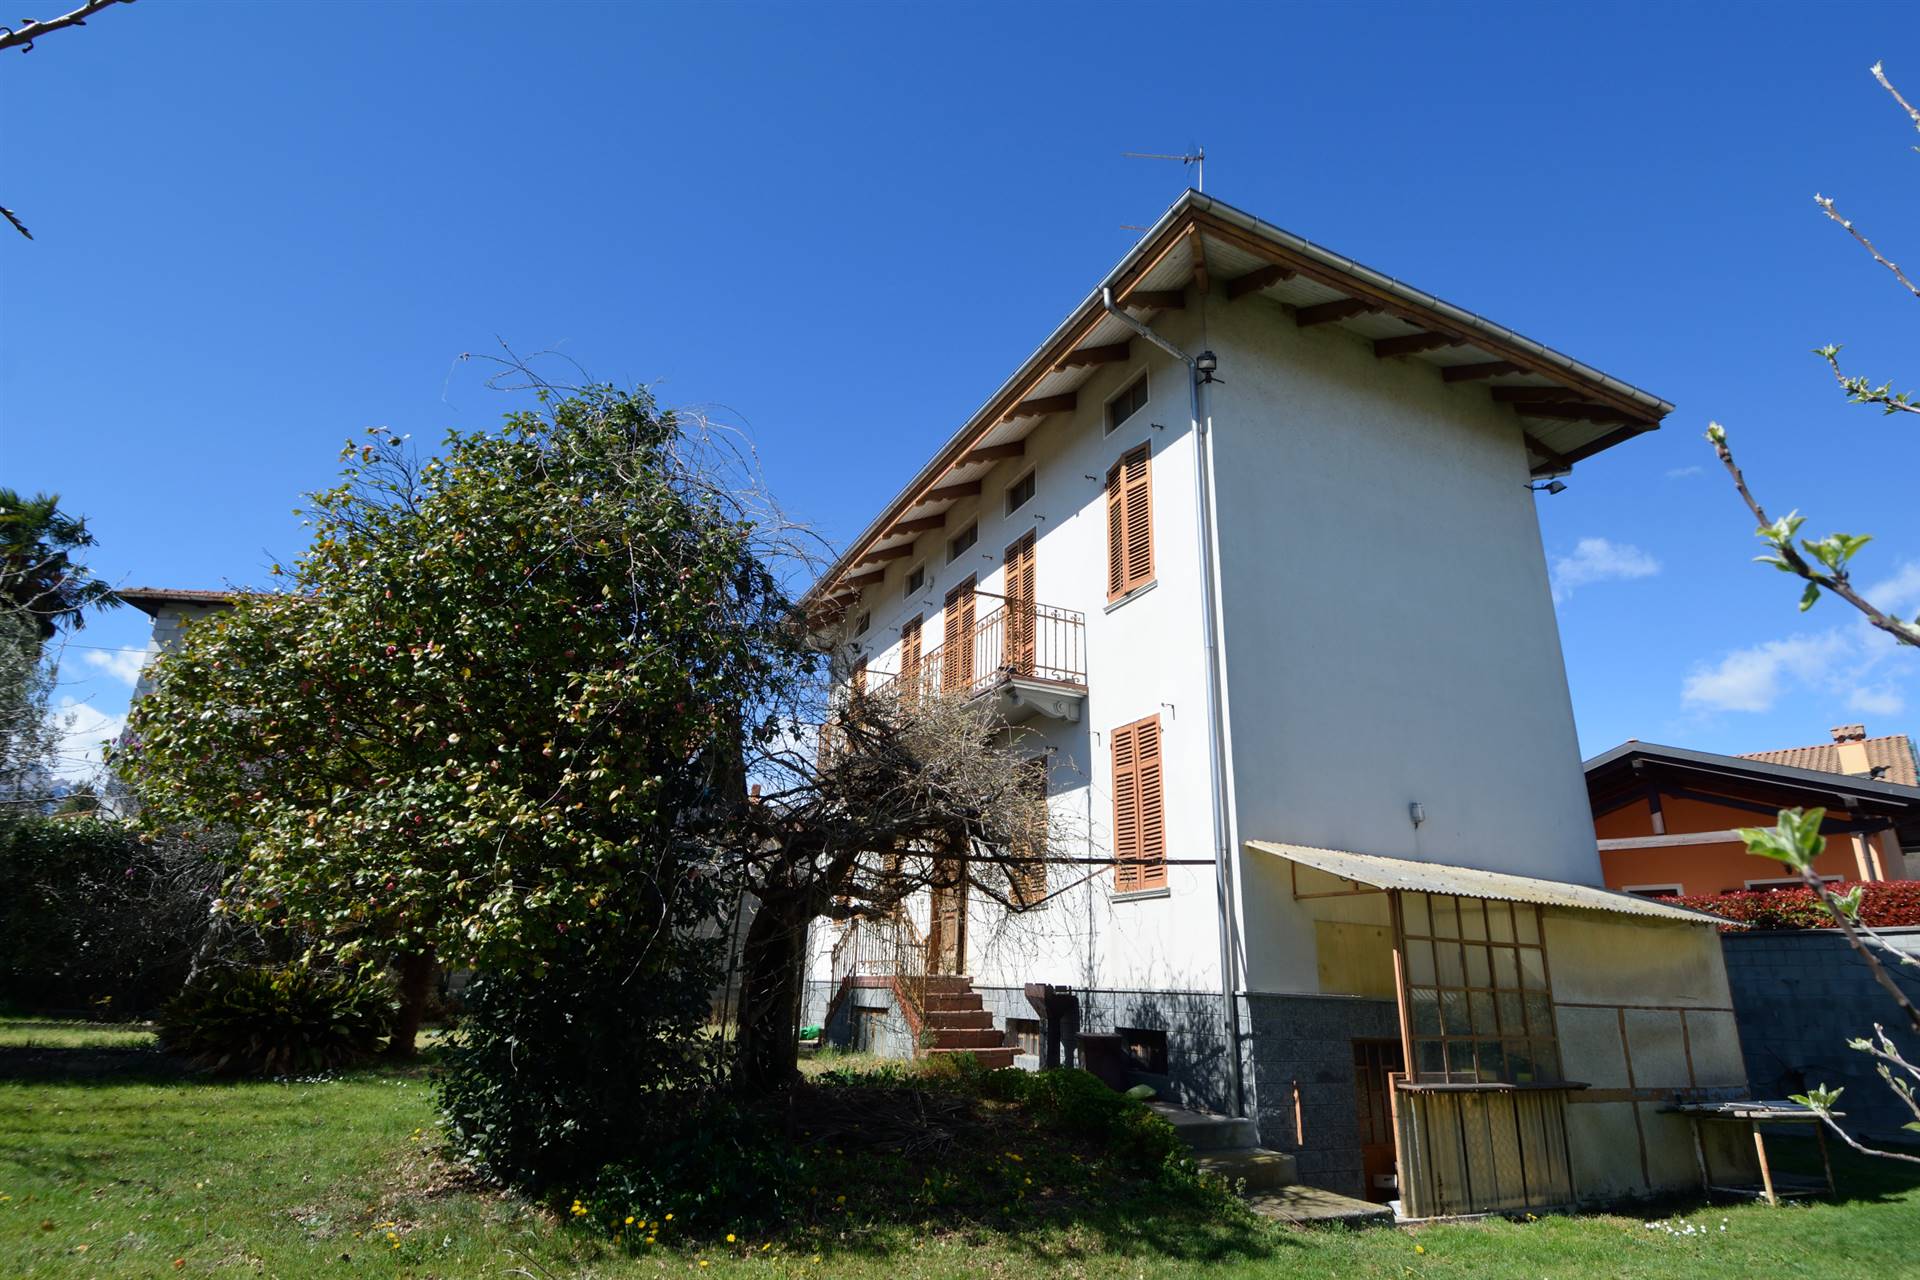 Villa in vendita a Biella, 5 locali, zona Località: PAVIGNANO / VAGLIO / COLMA, prezzo € 110.000 | PortaleAgenzieImmobiliari.it